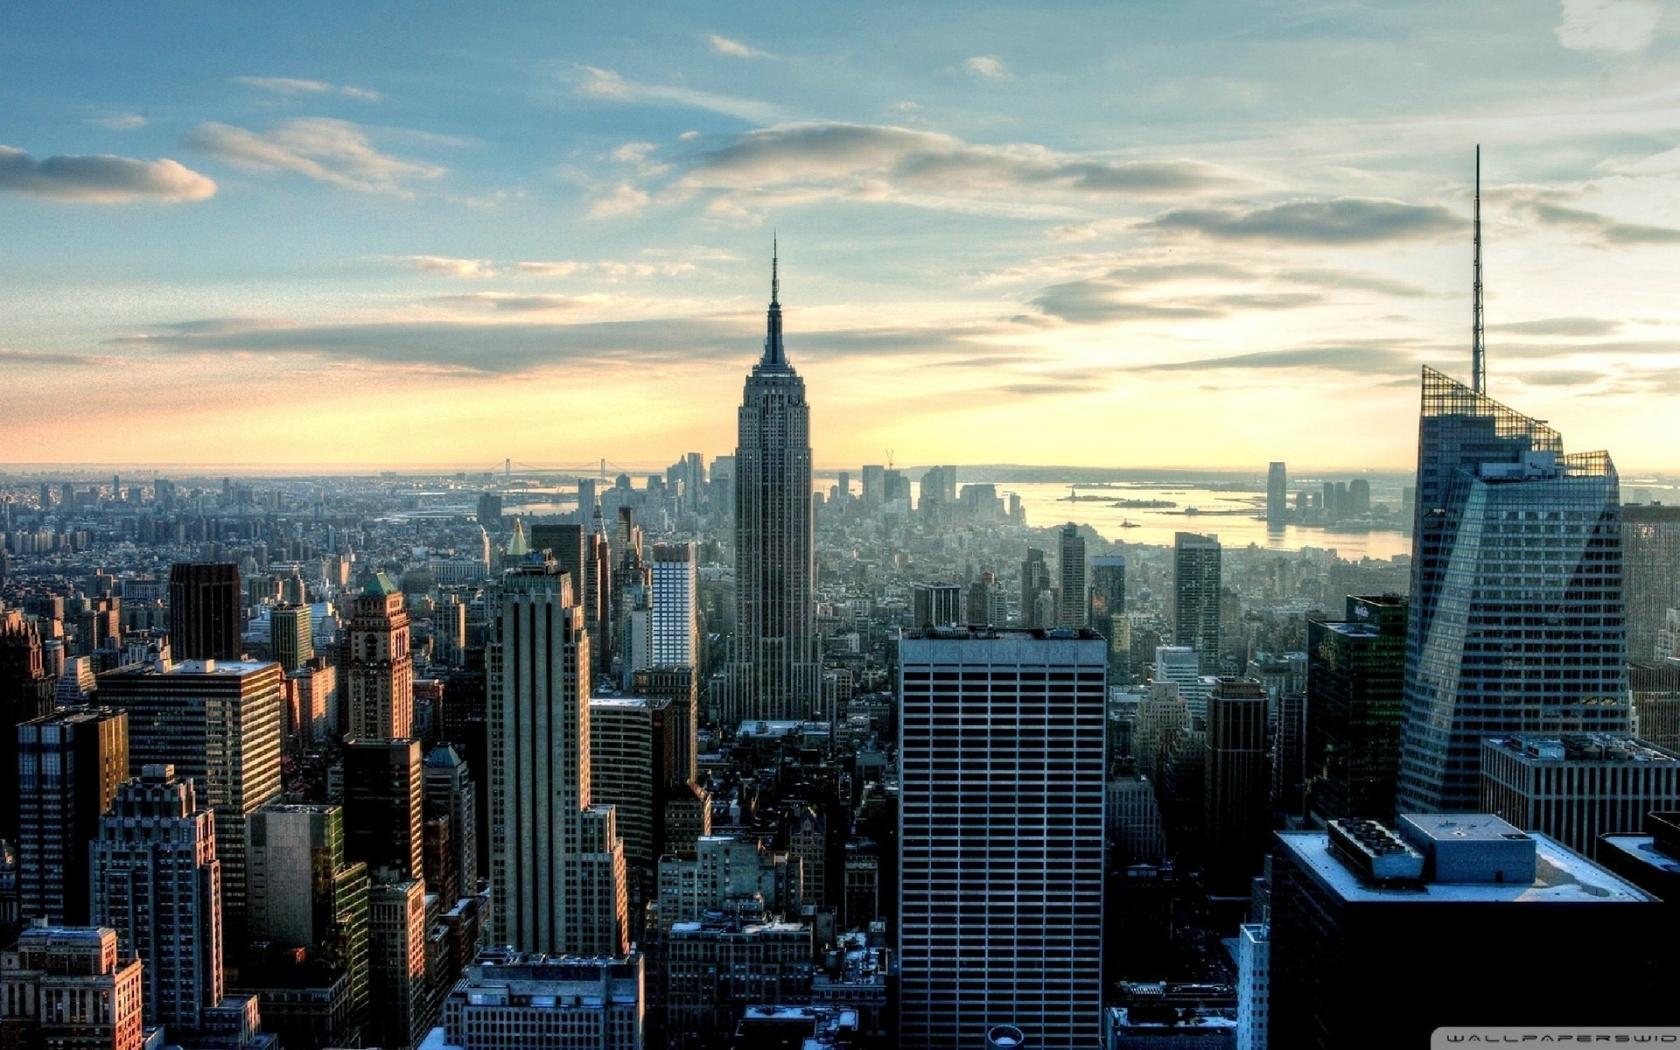 Hình nền PC New York: Khám phá thành phố đầy sức sống và mảnh đất của những cơ hội. Với hình nền PC New York, bạn sẽ được đắm chìm trong khung cảnh độc đáo của thành phố với tòa nhà cao tầng và đầy màu sắc. Tạo cho mình một không gian độc đáo và bắt đầu ngày mới đầy sức sống.